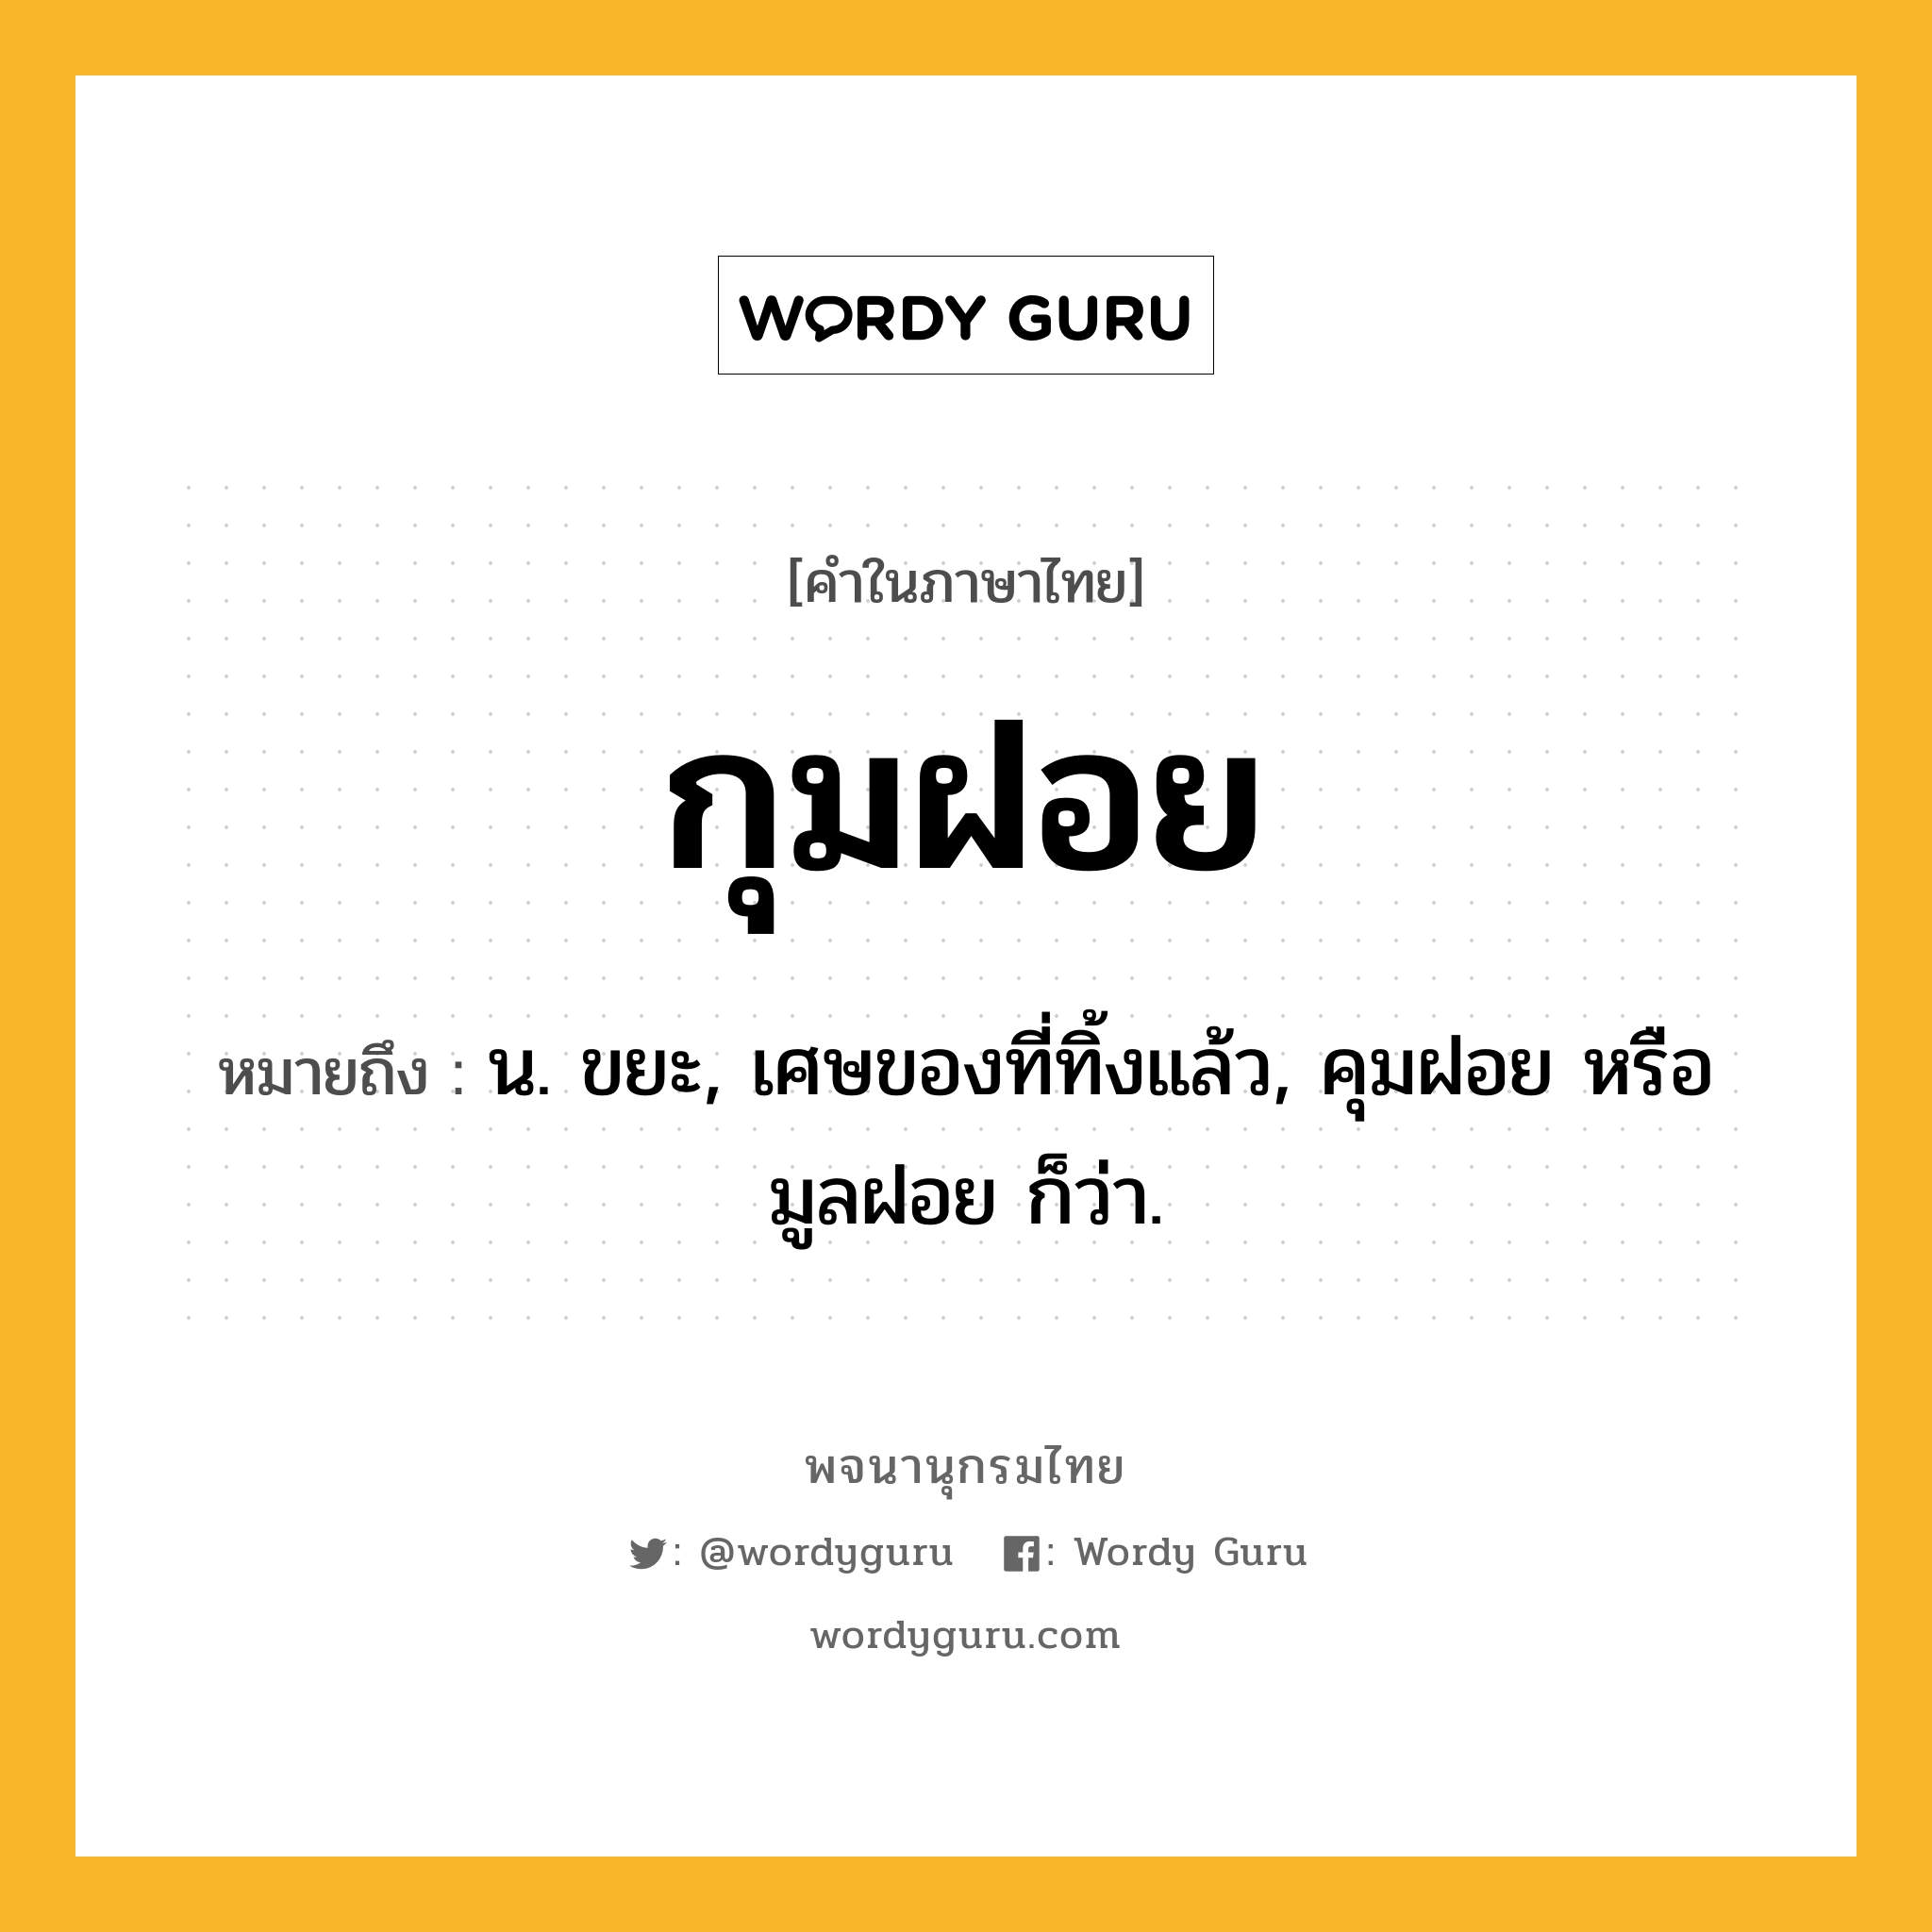 กุมฝอย หมายถึงอะไร?, คำในภาษาไทย กุมฝอย หมายถึง น. ขยะ, เศษของที่ทิ้งแล้ว, คุมฝอย หรือ มูลฝอย ก็ว่า.